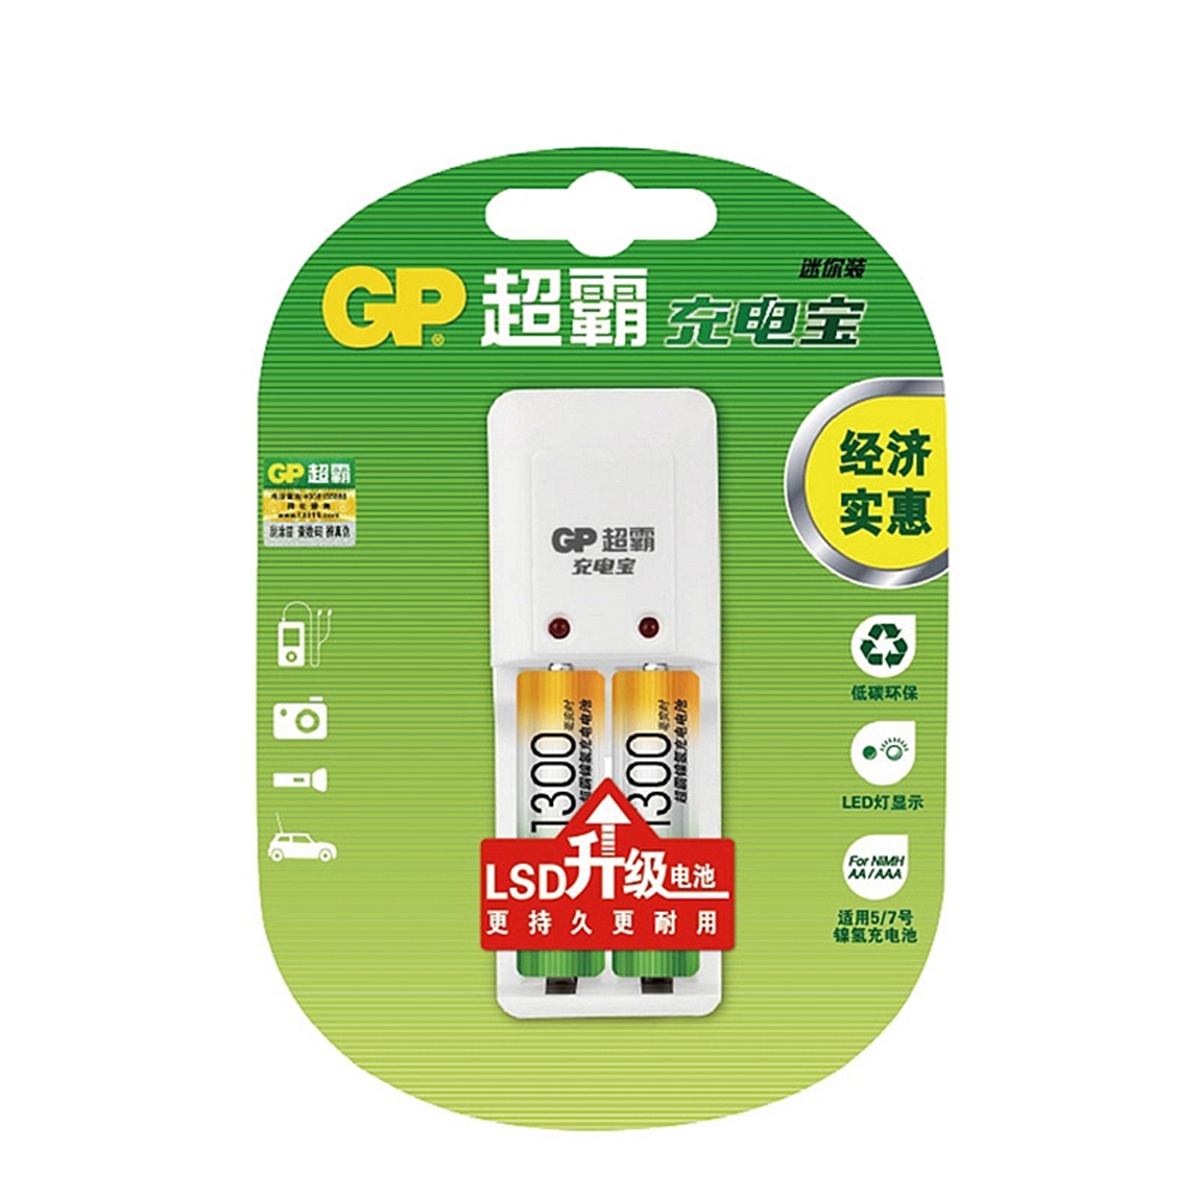 超霸GPKB02GW*2+充电器镍氢充电套装1套(套) 充电电池充电器